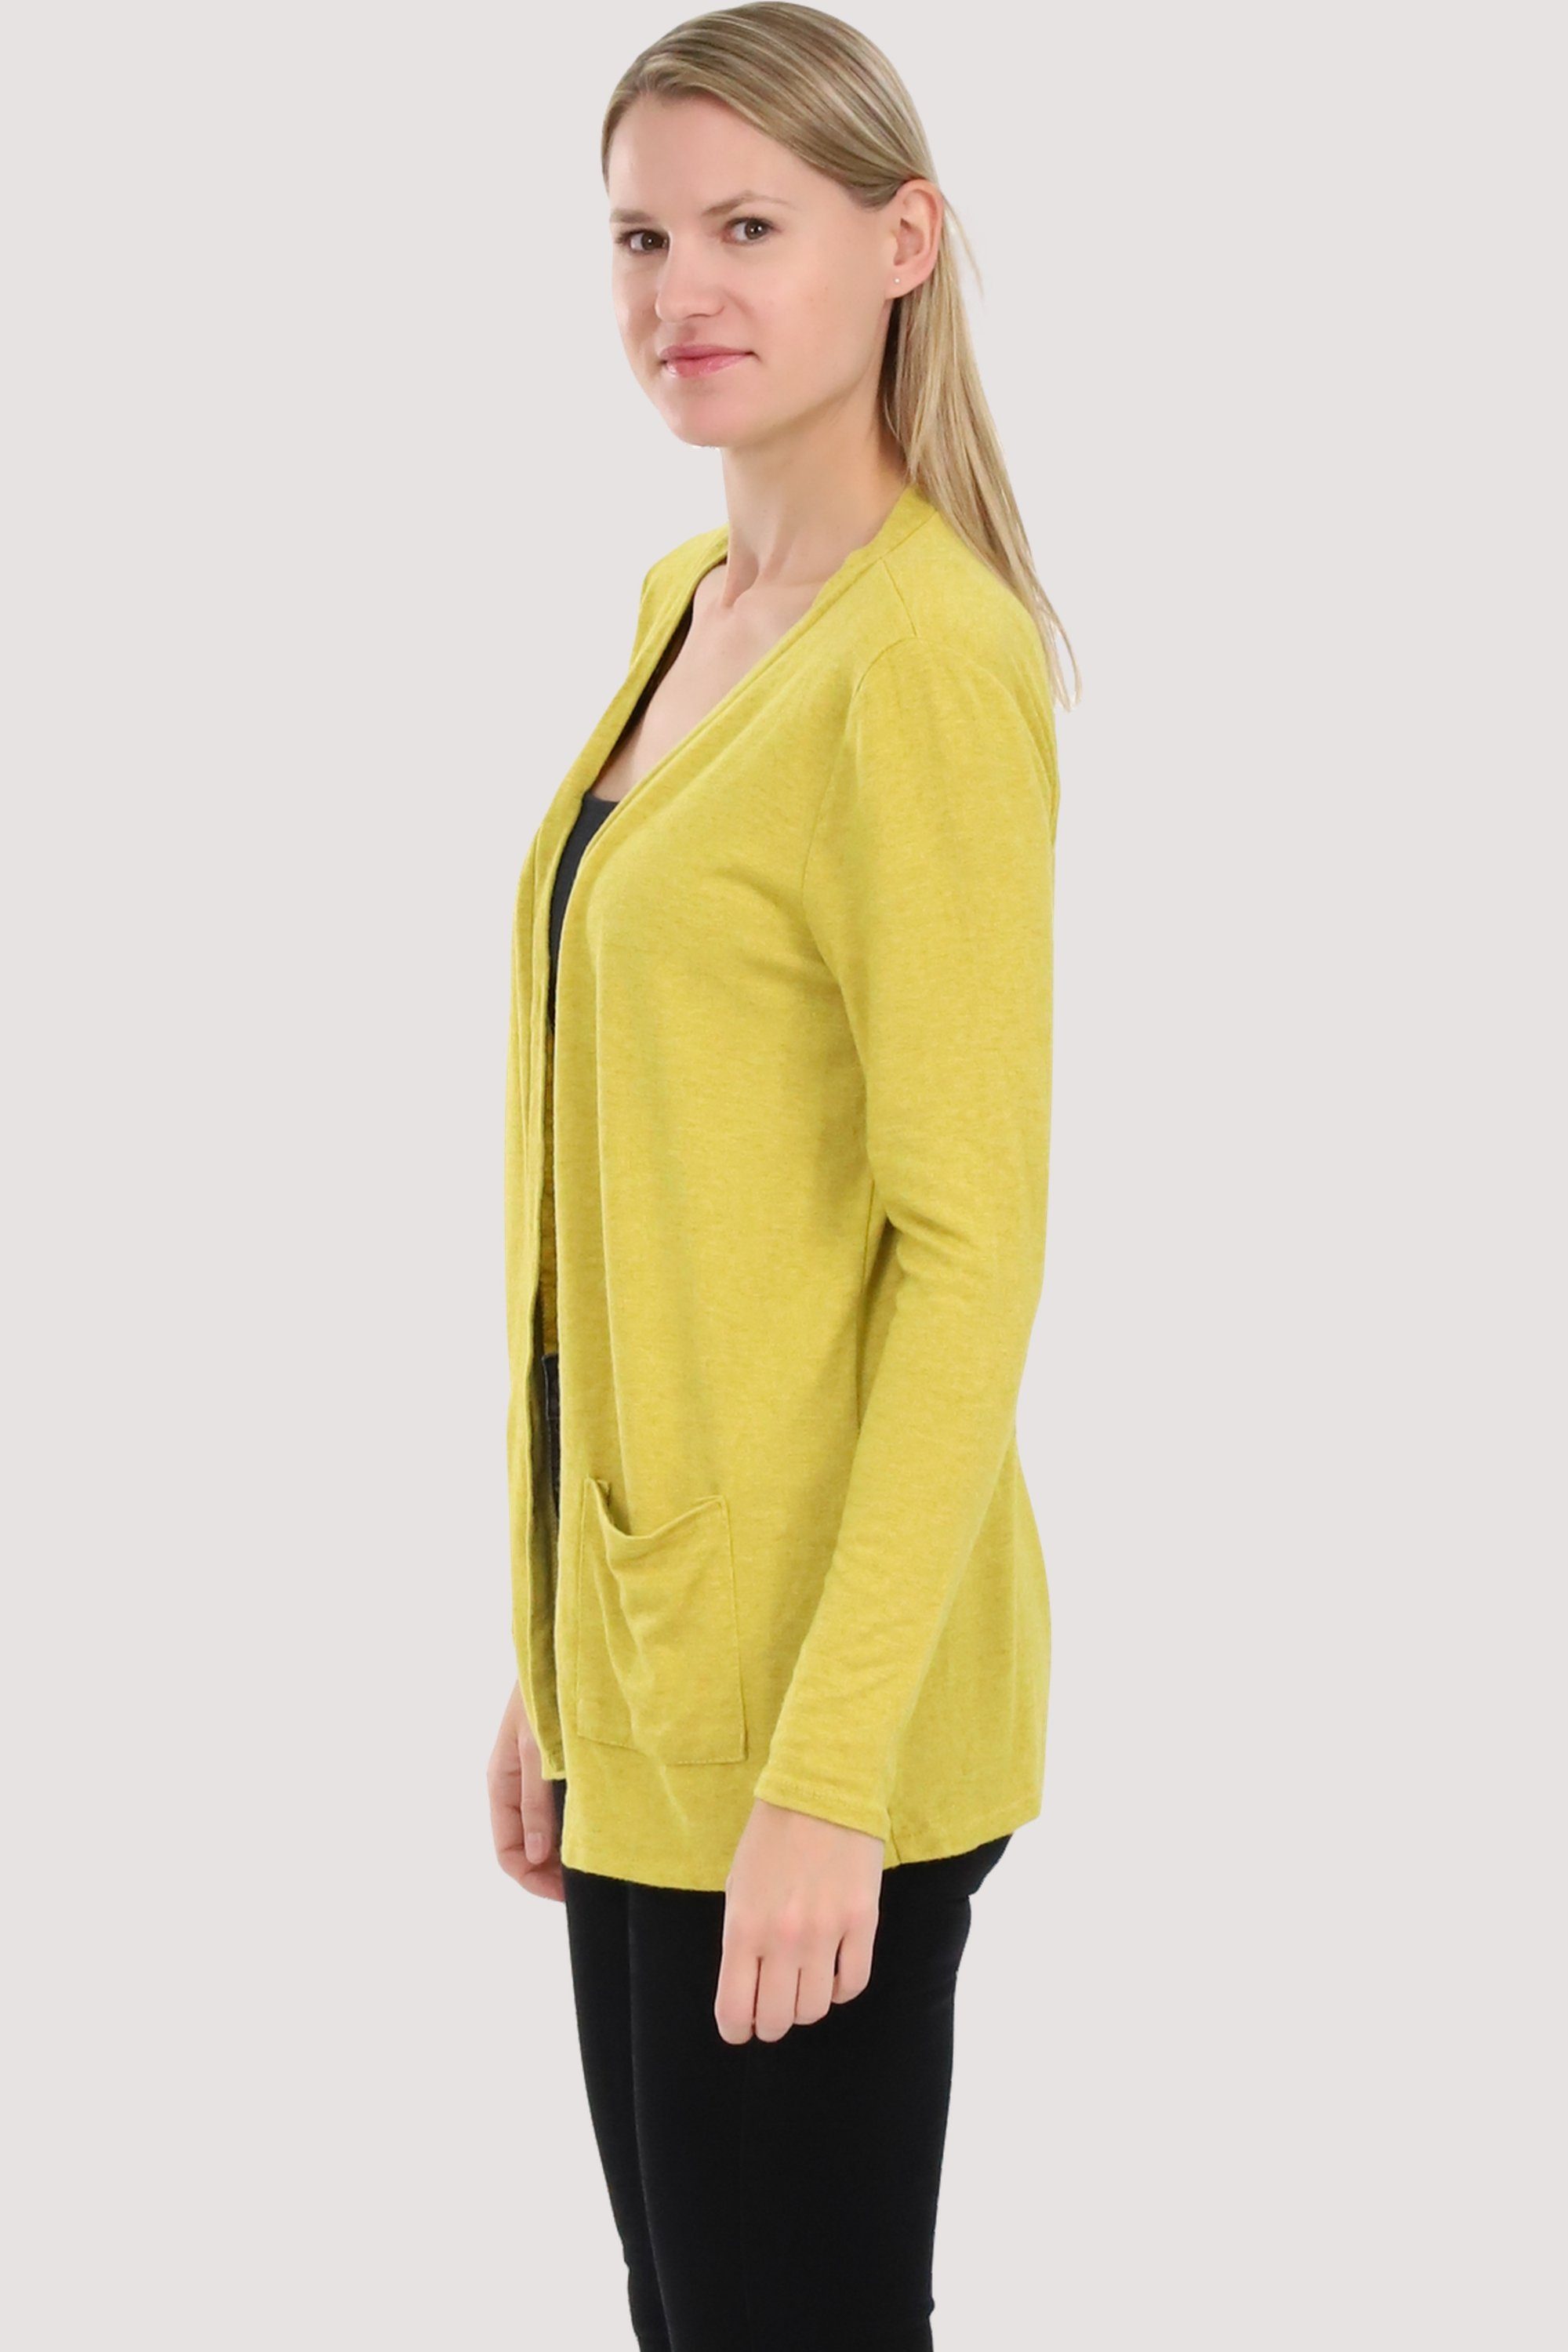 malito more than fashion Eingriffstaschen Jacke gelb mit 2243 Feinstrick Cardigan